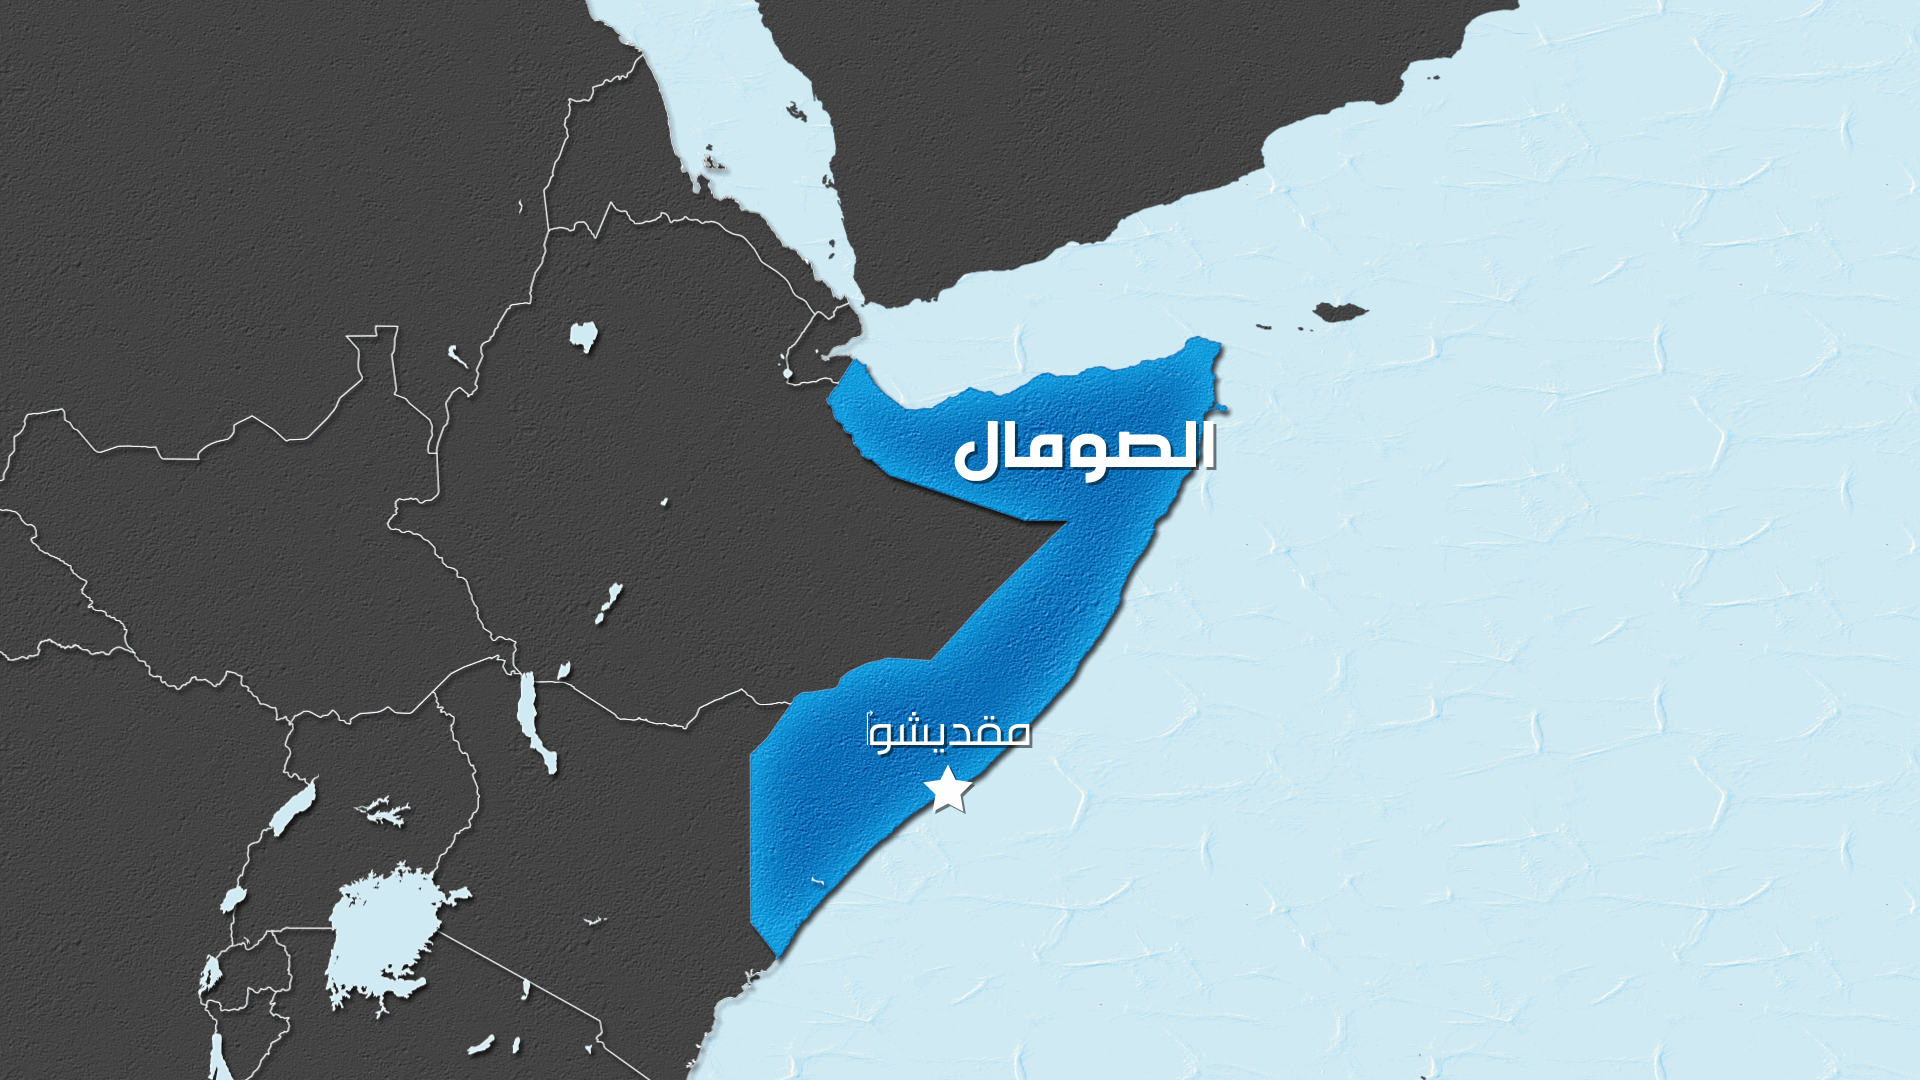 الرئيس الصومالي وقَع قانونا يلغي اتفاق إقليم أرض الصومال